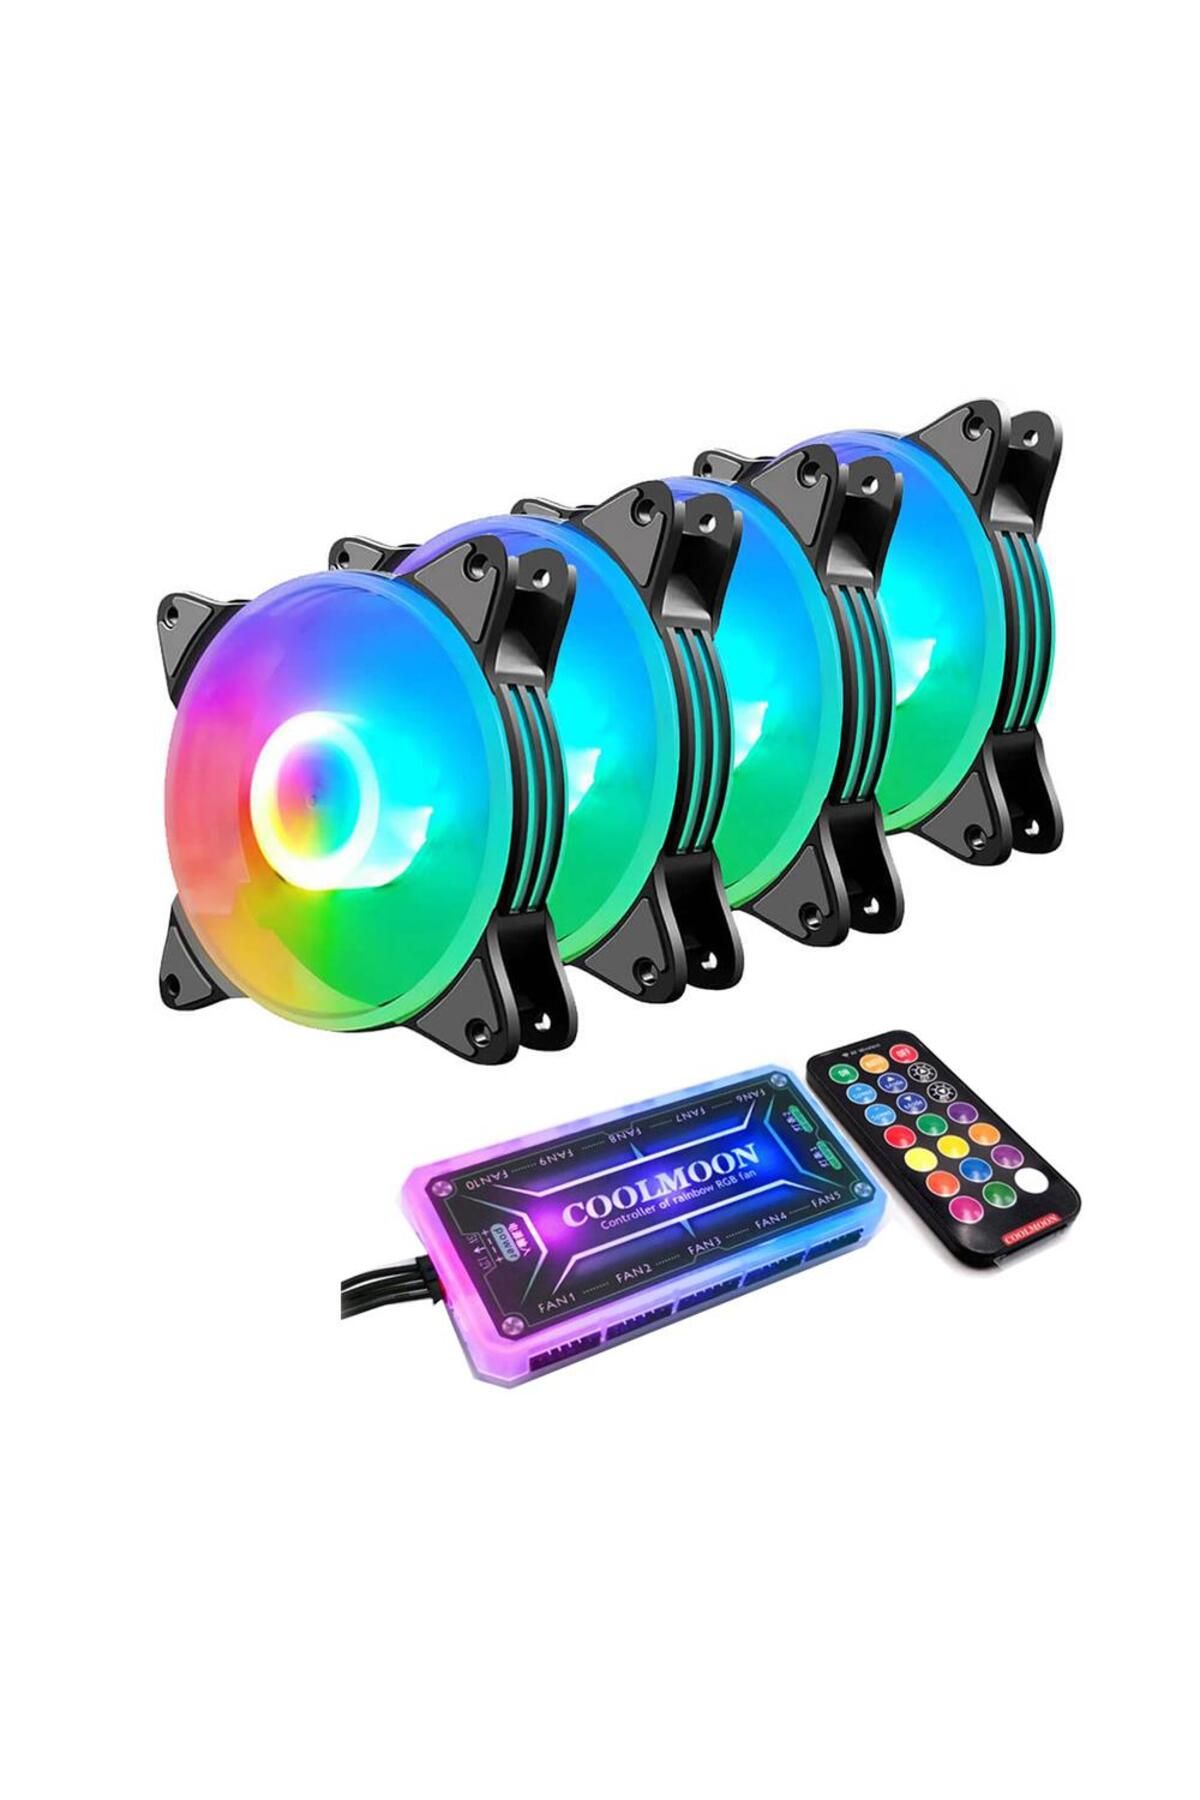 Cool Moon CoolMoon 4 Adet 12cm RGB Işıklı Kasa Fanı ( 12V 6 Pin Bağlantı ) RGB Fan Seti + Kontrolcü + Kumanda